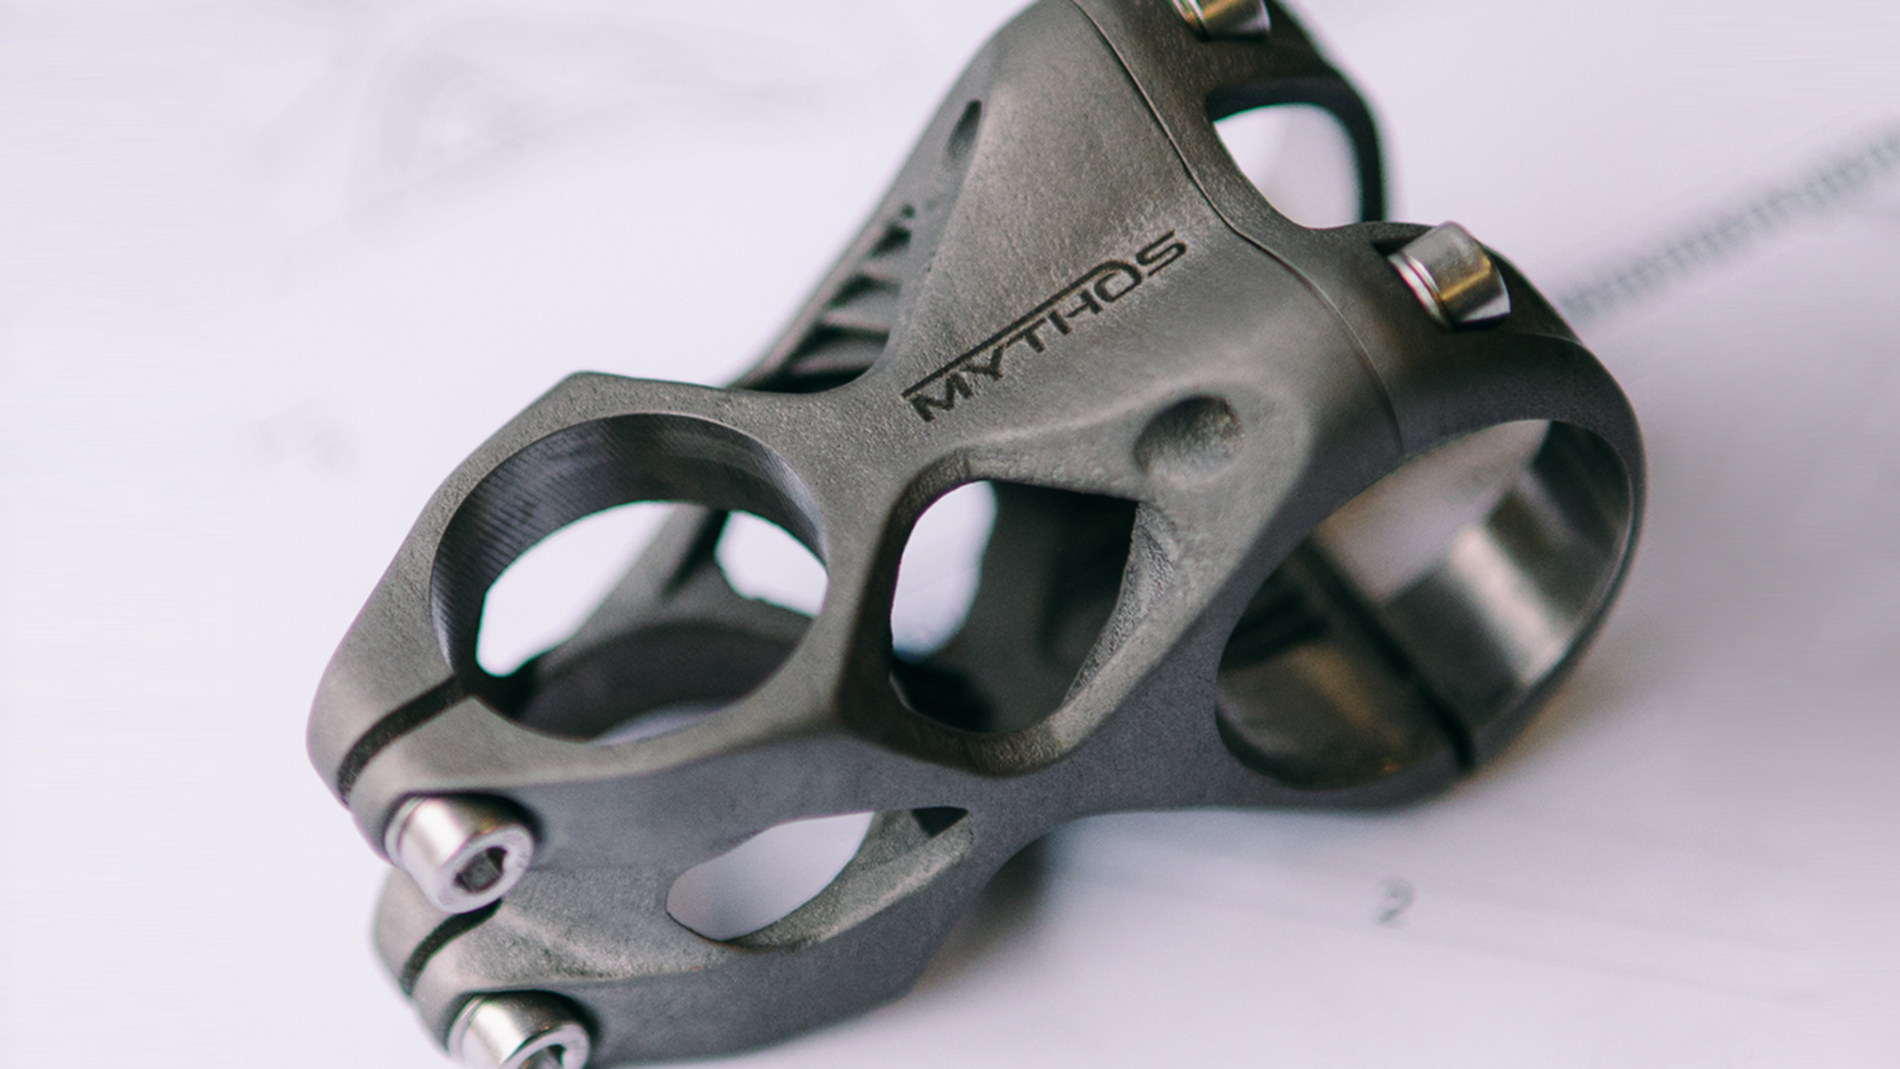 Mythos IXO stem made of titanium. Image: Mythos